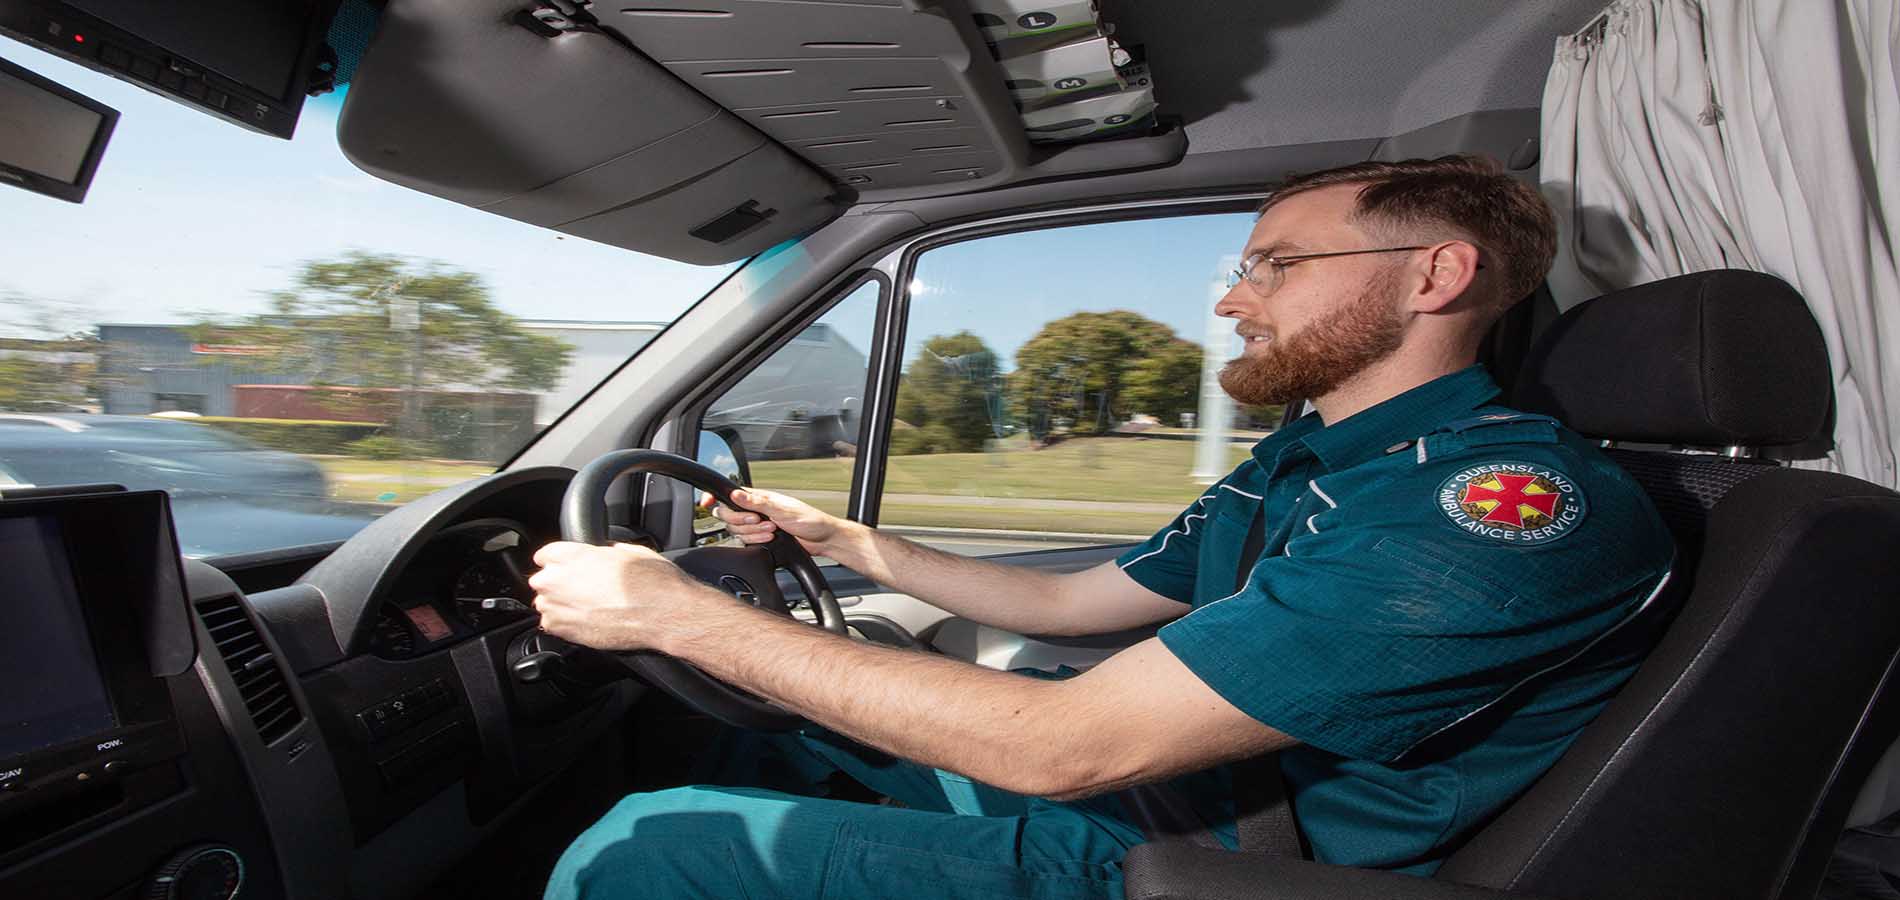 ambulance worker driving